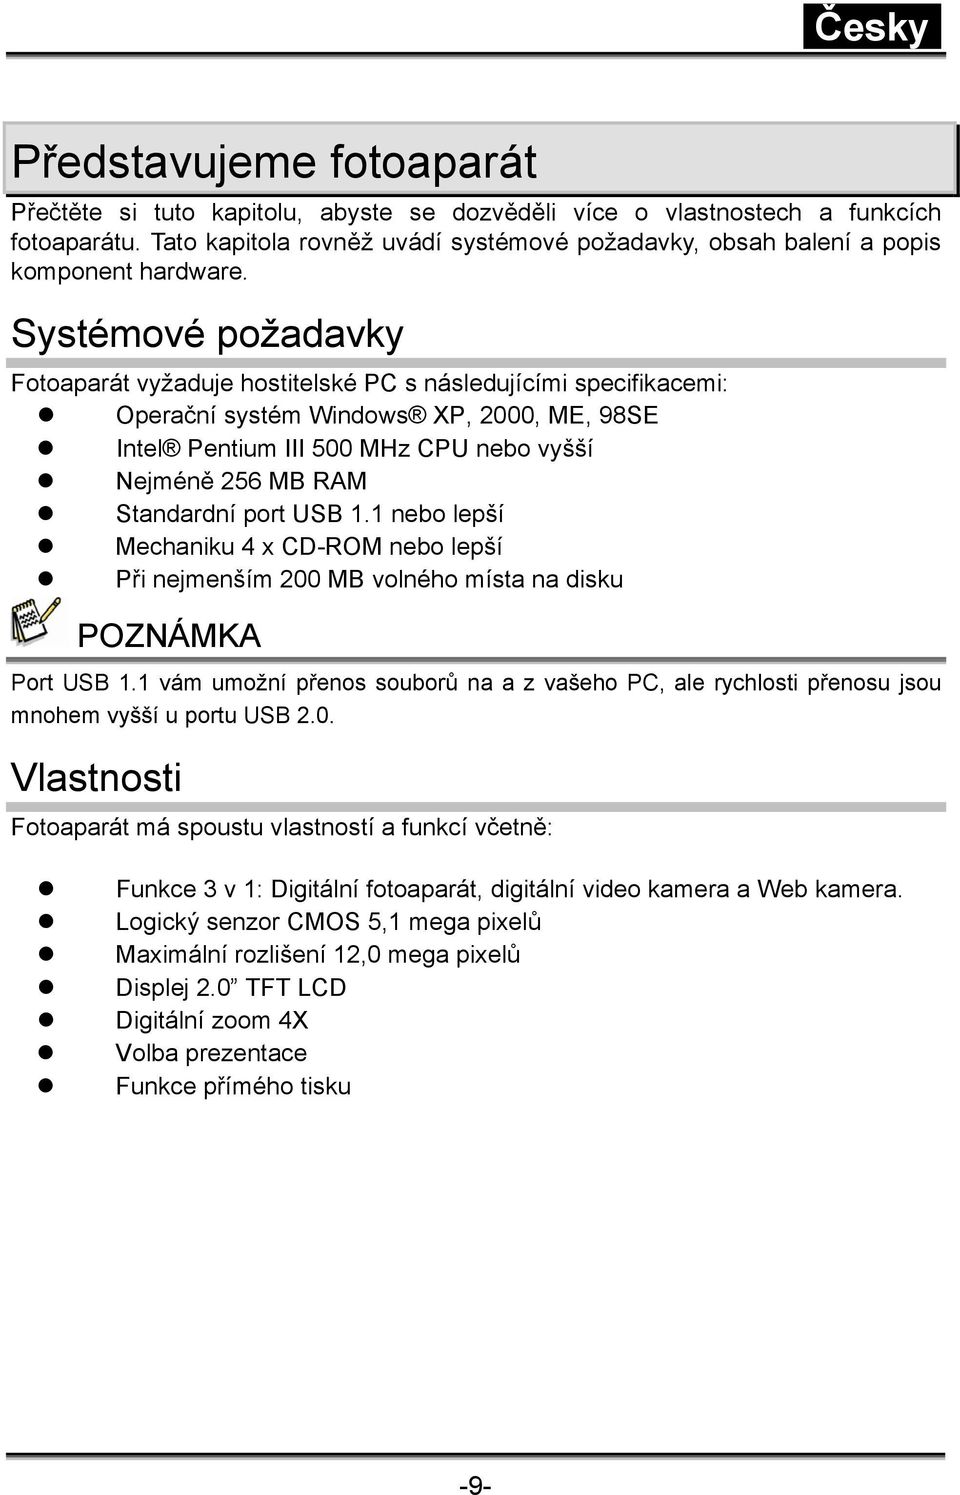 Systémové požadavky Fotoaparát vyžaduje hostitelské PC s následujícími specifikacemi: Operační systém Windows XP, 2000, ME, 98SE Intel Pentium III 500 MHz CPU nebo vyšší Nejméně 256 MB RAM Standardní